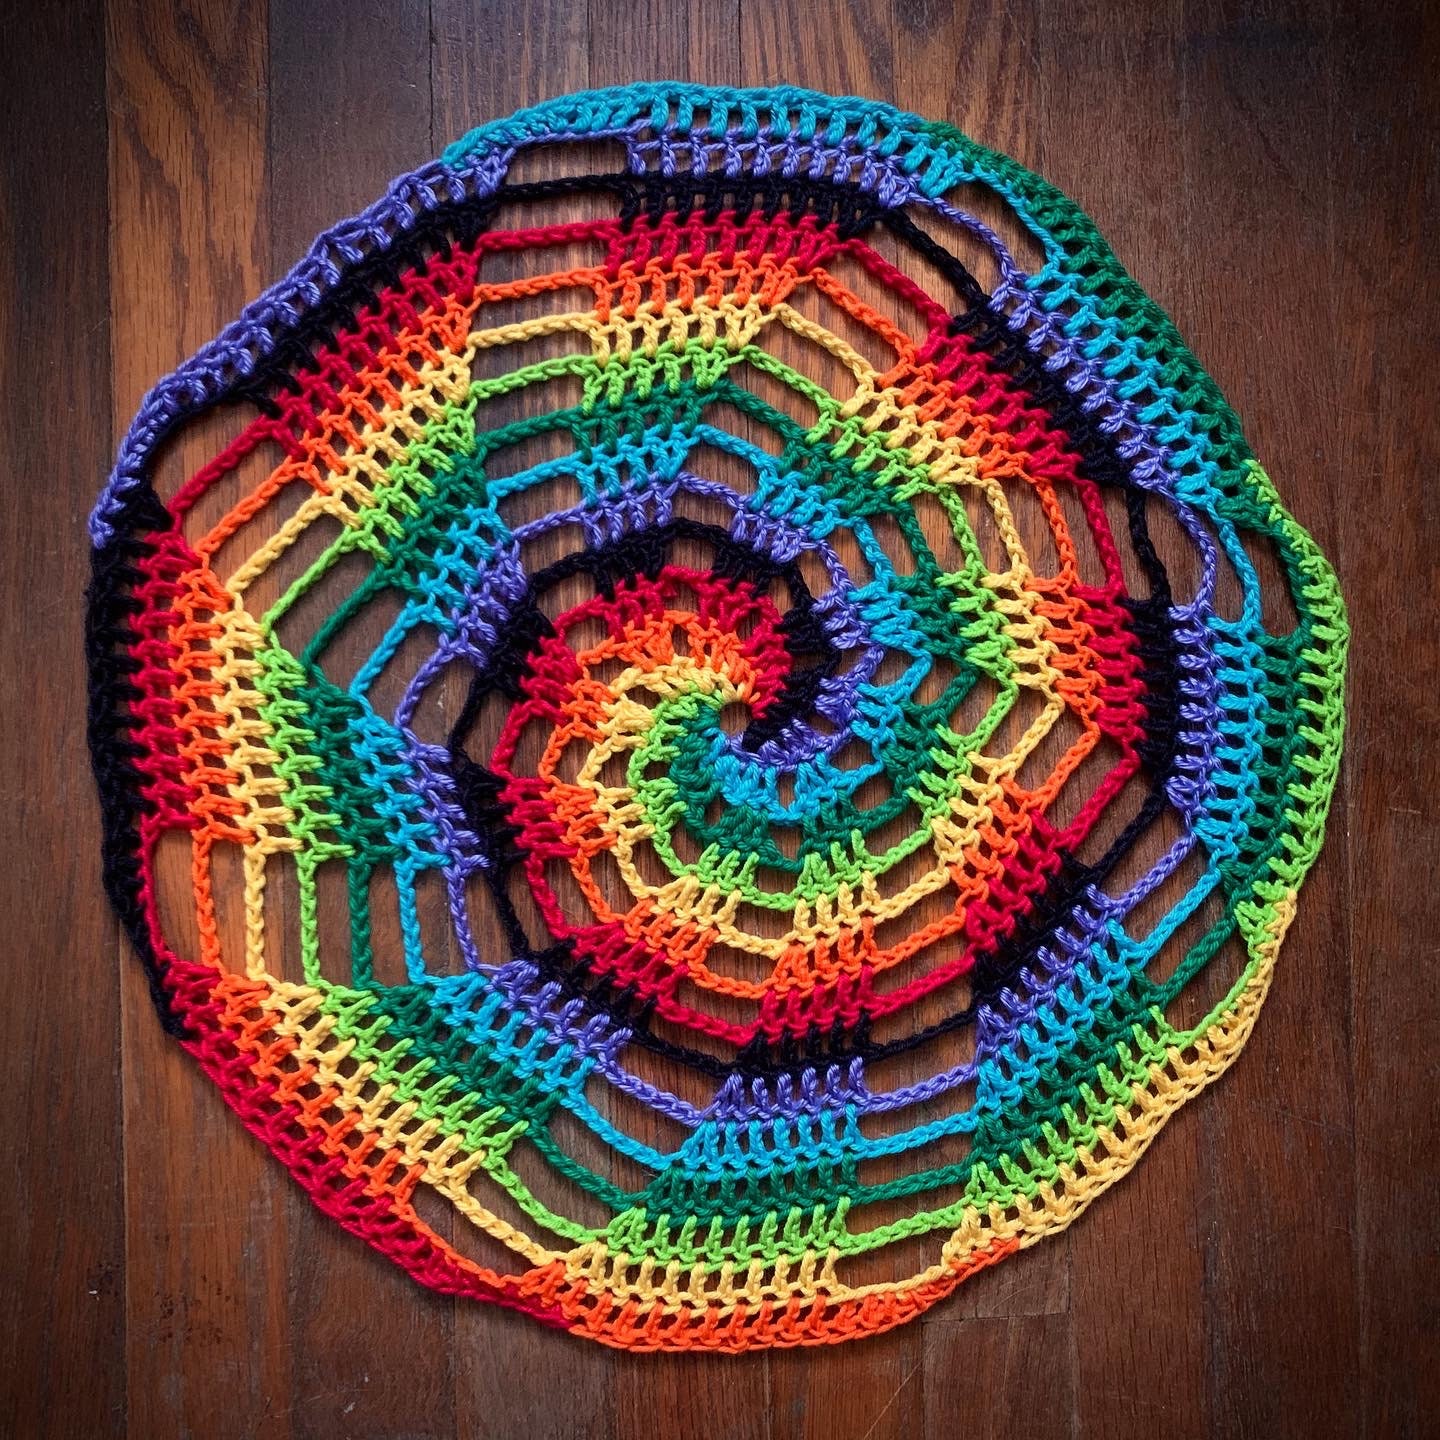 Crochet Patterns & Projects - The Crochet SwirlThe Crochet Swirl